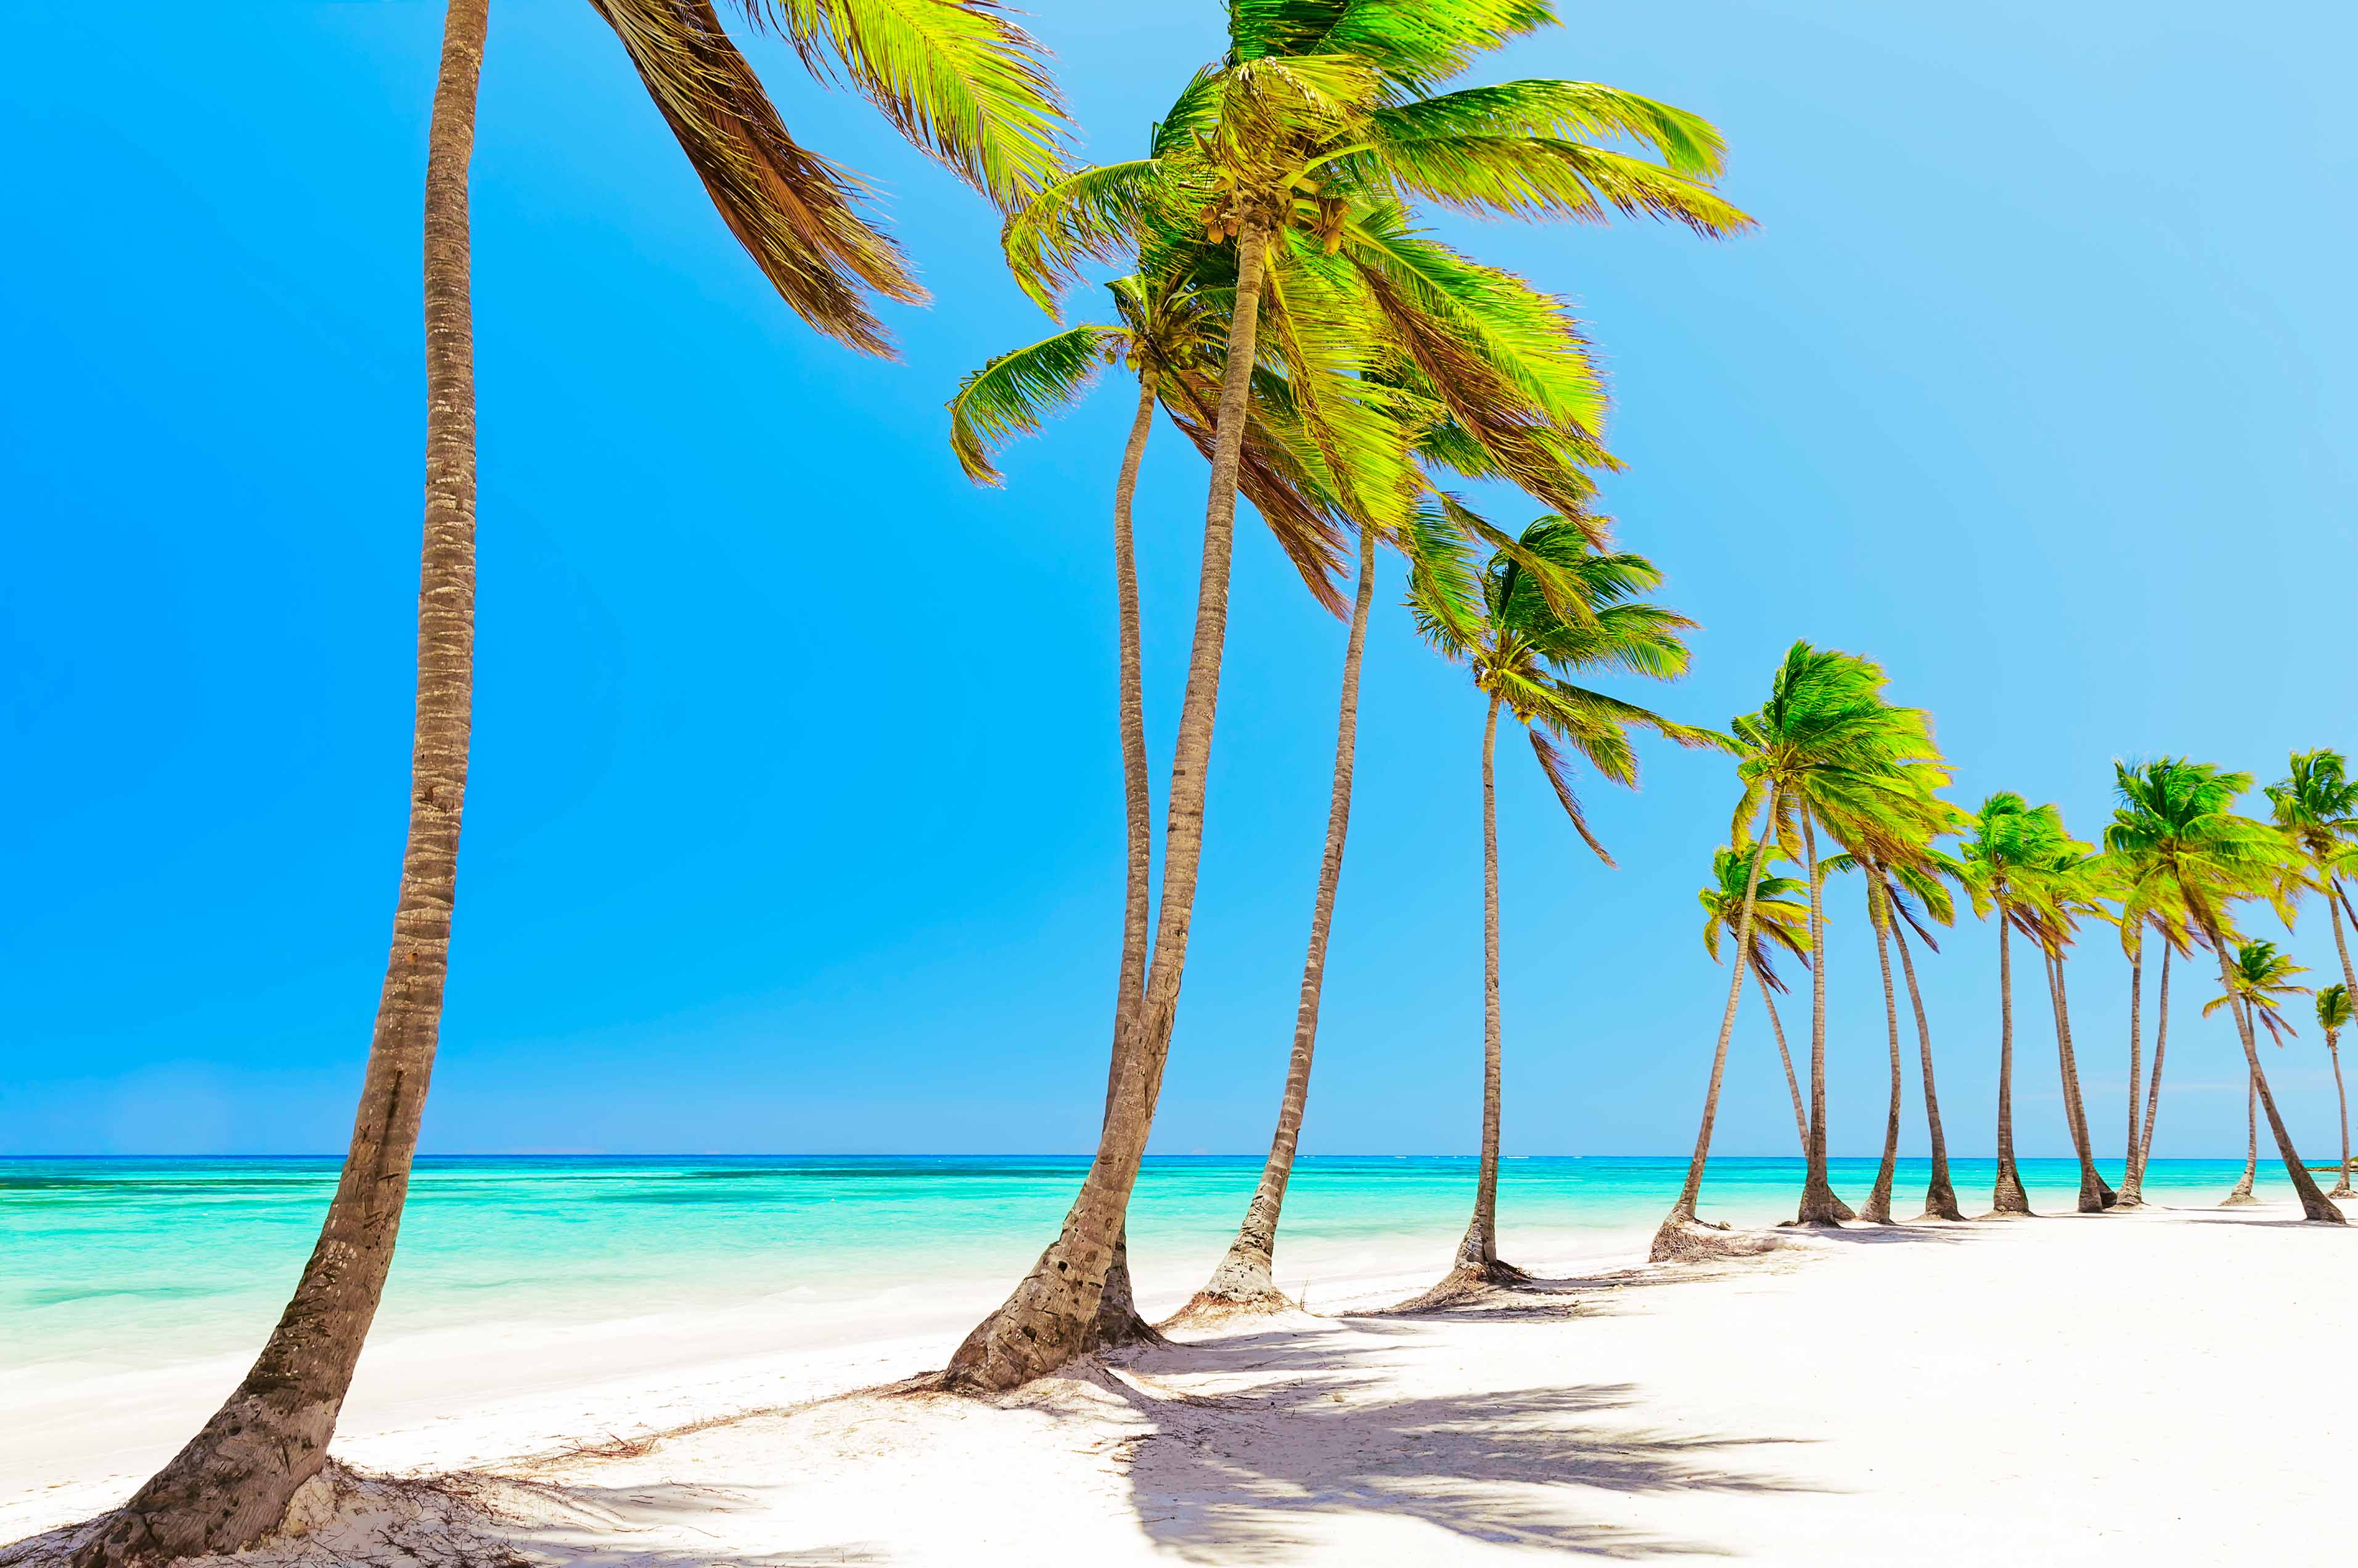 Descubre la playa Juanillo en Punta Cana - viajes increíbles